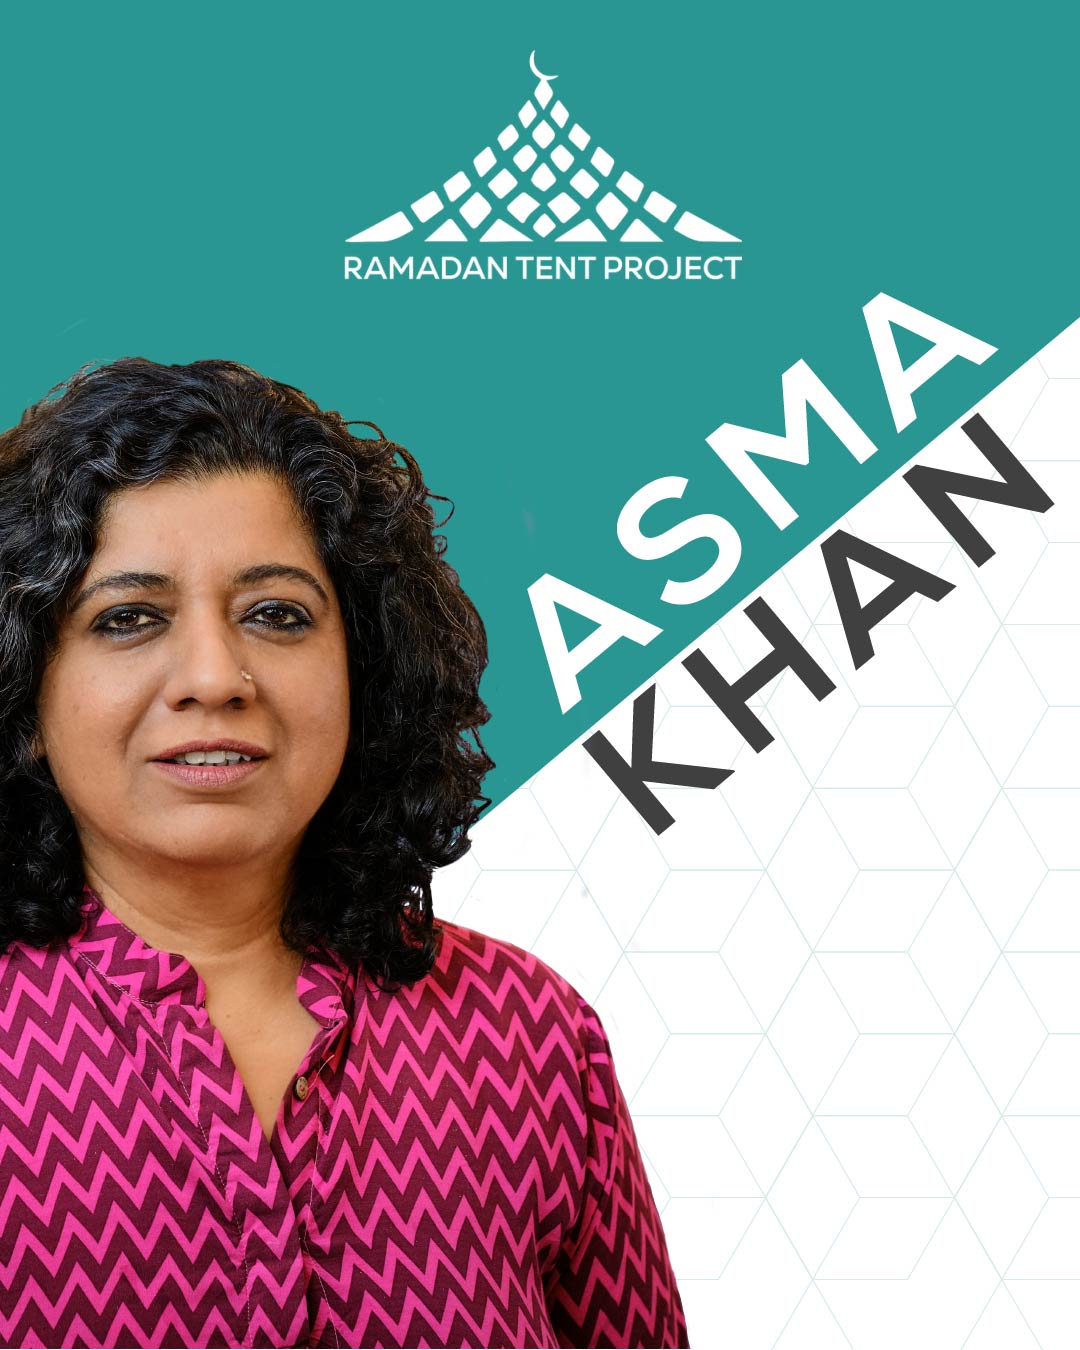 Asma Khan